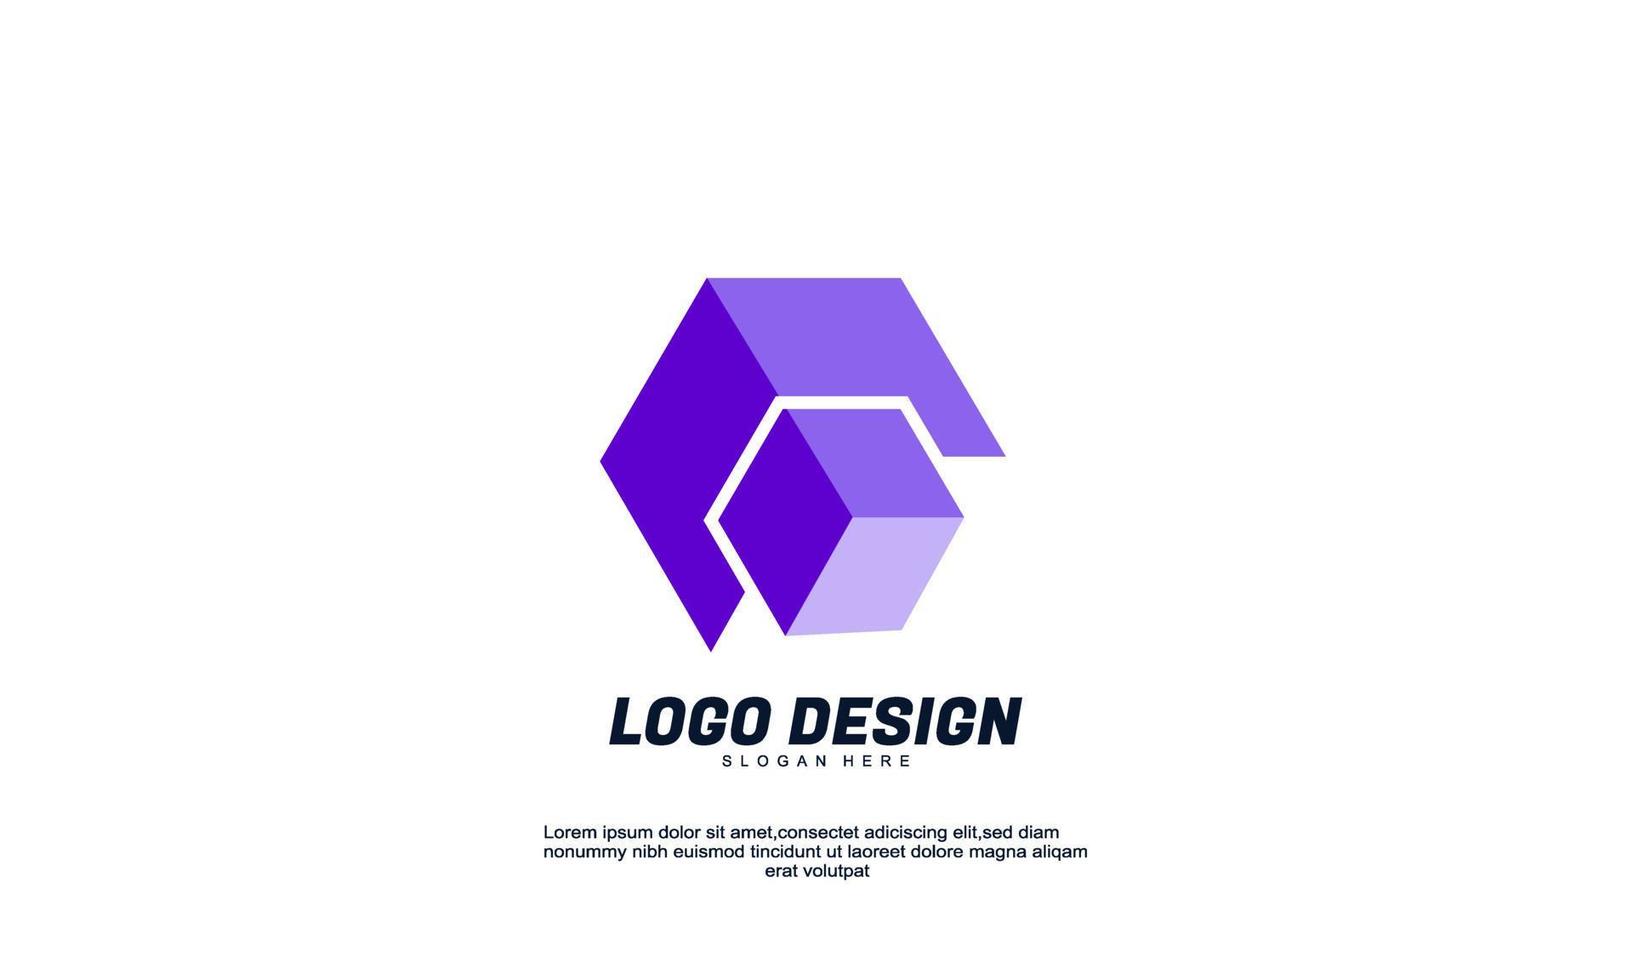 logotipo moderno de identidade de ideia criativa abstrata de vetor de estoque para empresa ou negócios cor roxa com modelo de design plano